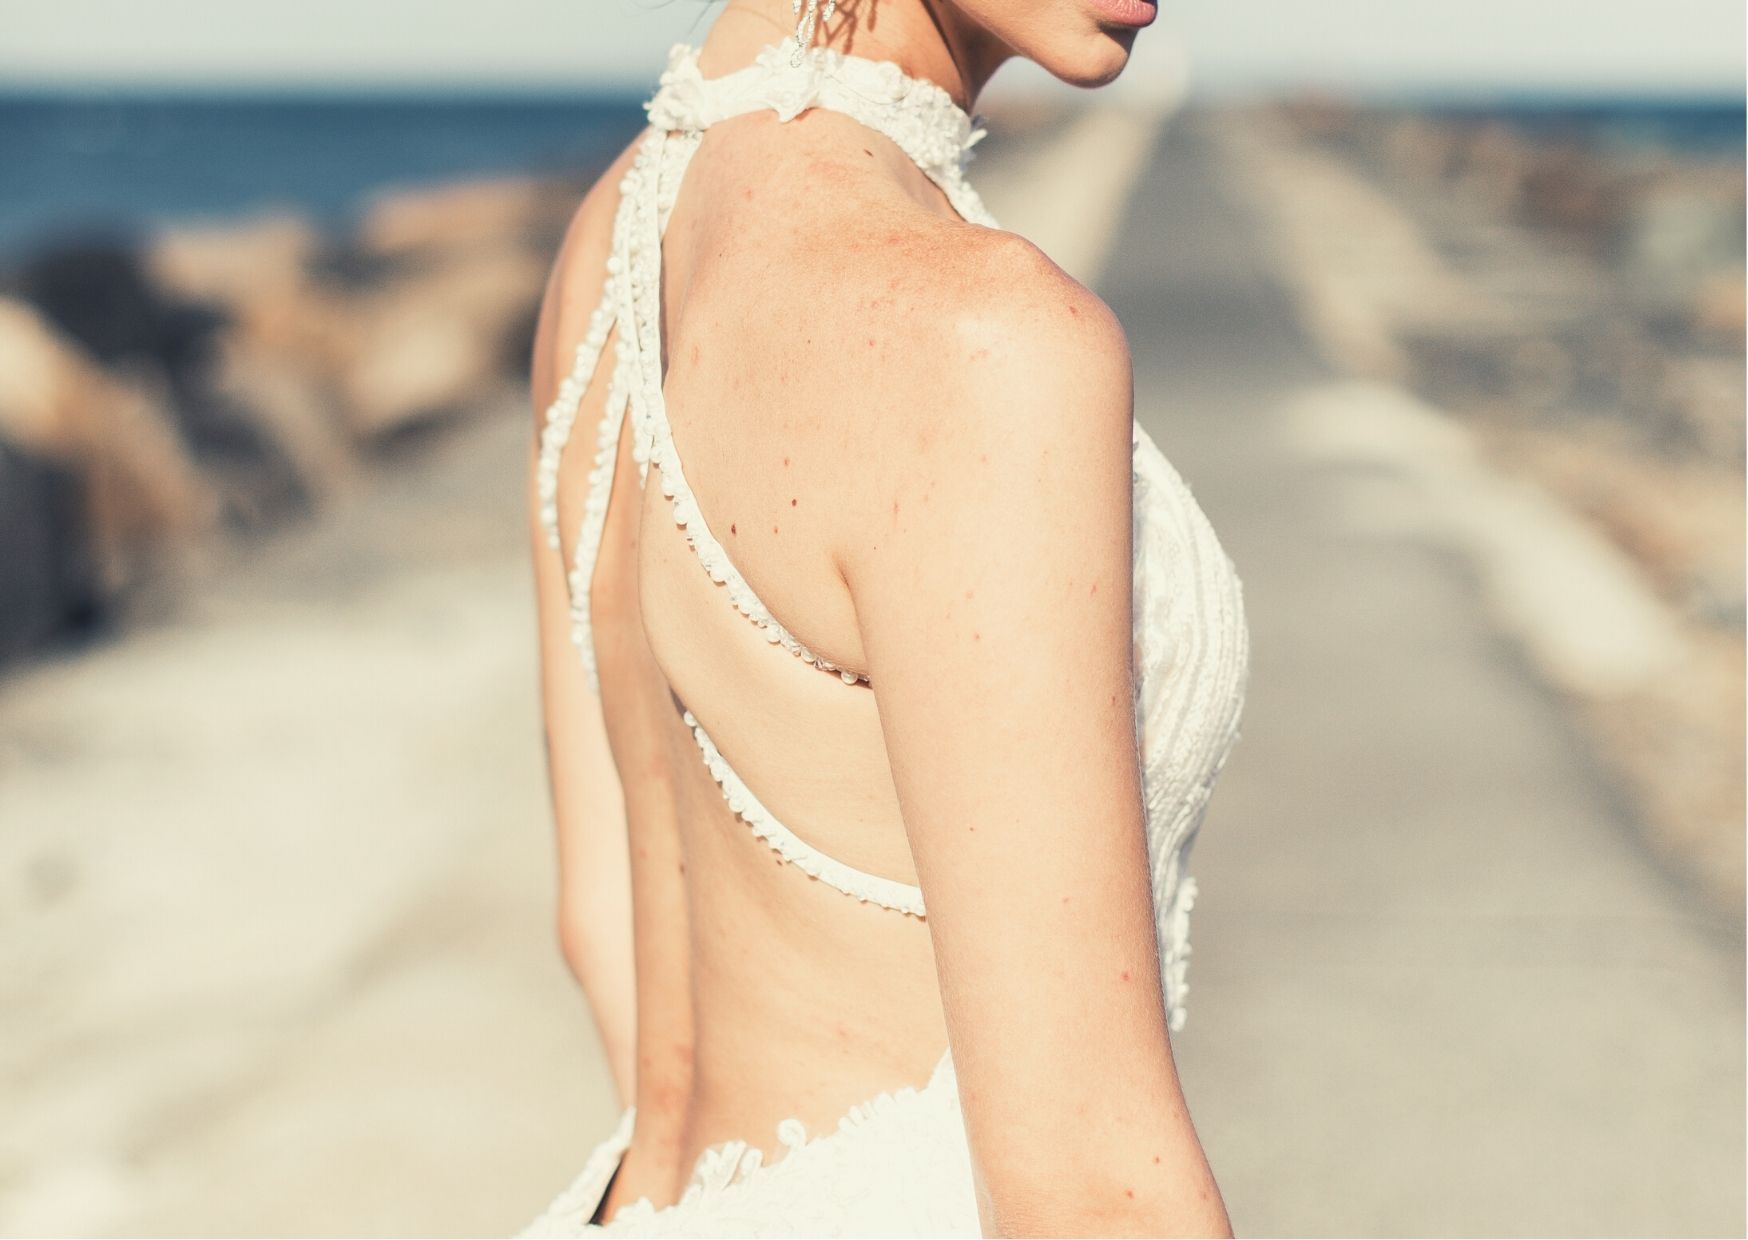 Braut im Neckholder Kleid mit Perlen am Rücken von Hinten zu sehen